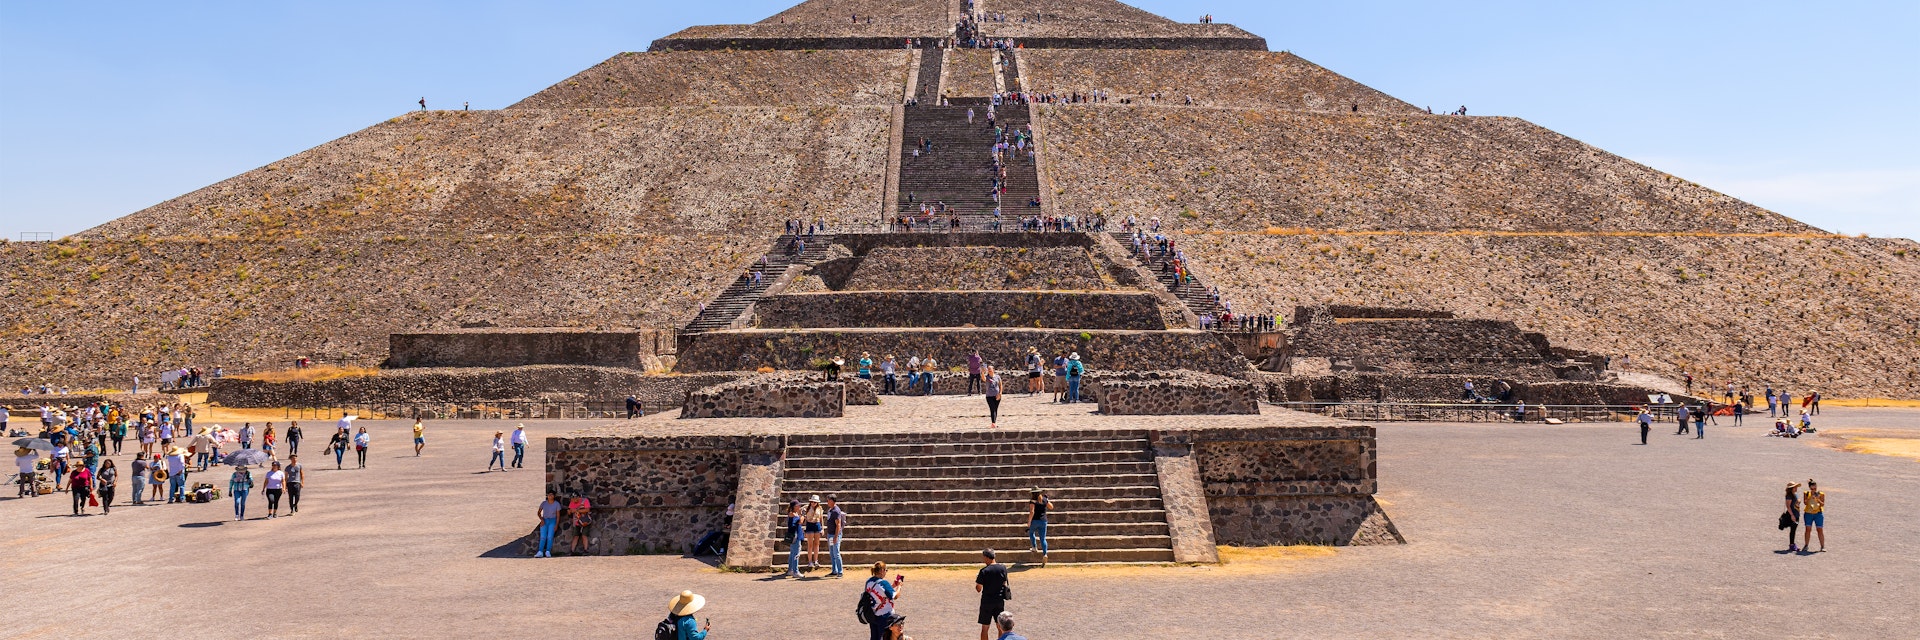 respekt Arbitrage Gentage sig Pirámide del Sol | Teotihuacán, Mexico | Attractions - Lonely Planet